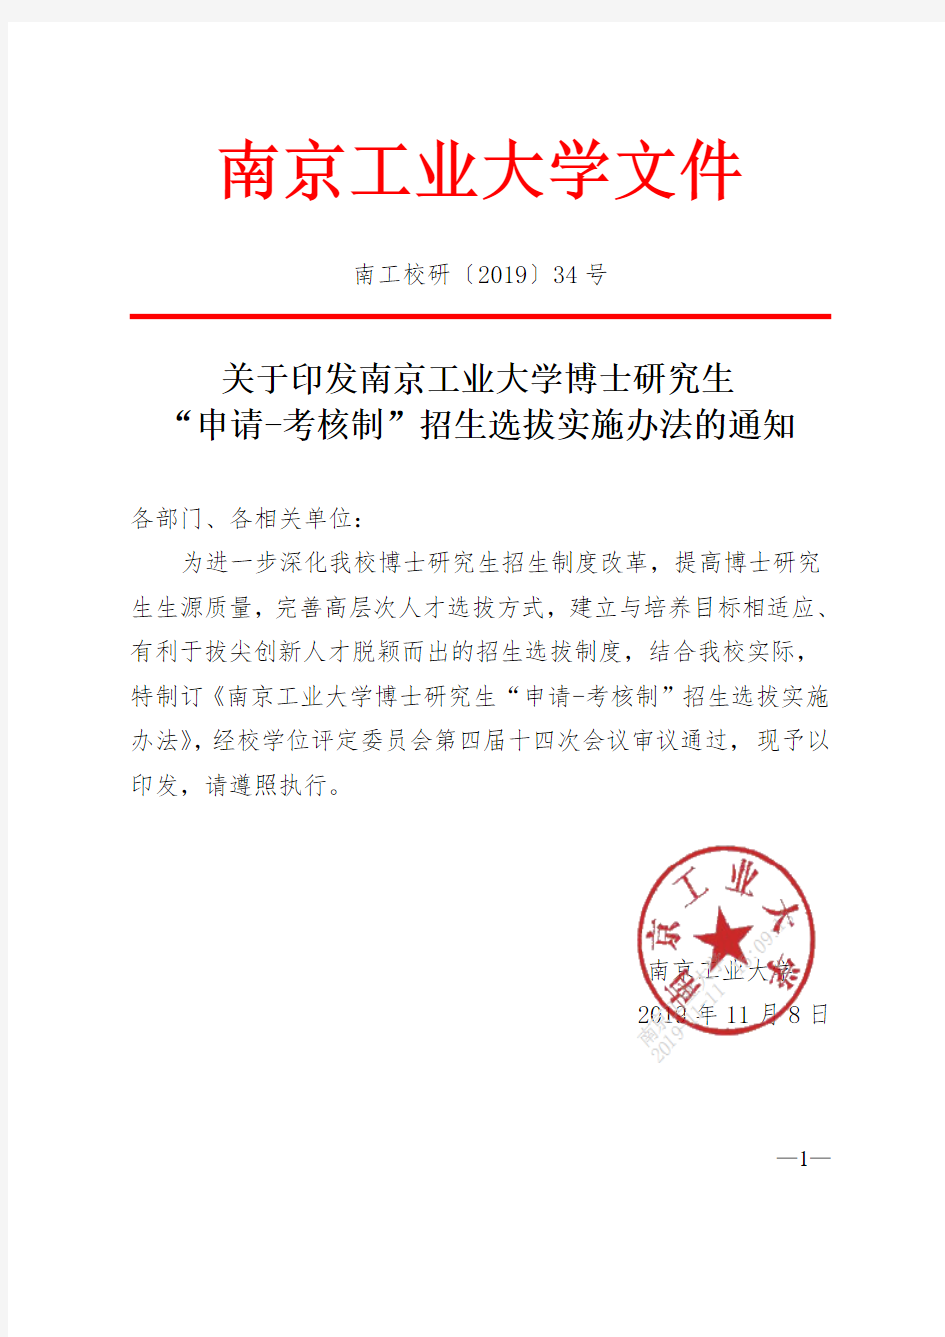 南京工业大学附件2：南京工业大学博士研究生“申请-考核制”招生选拔实施办法